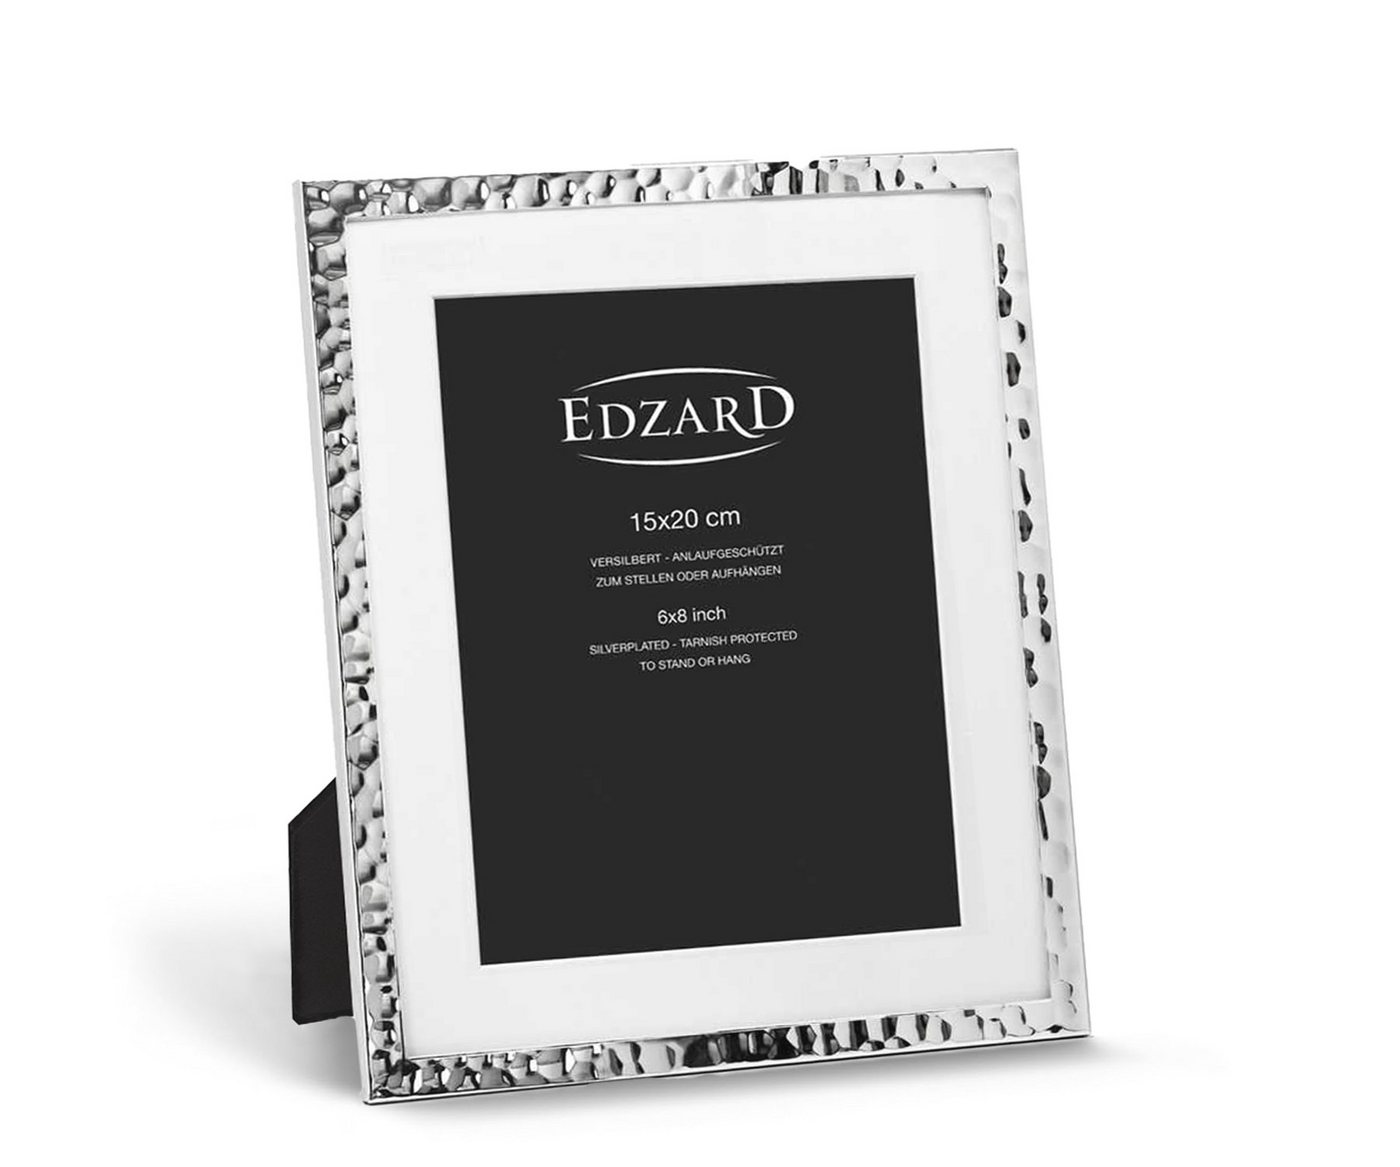 EDZARD Bilderrahmen Fano, versilbert und anlaufgeschützt, für 15x20 cm Bilder – Fotorahmen von EDZARD